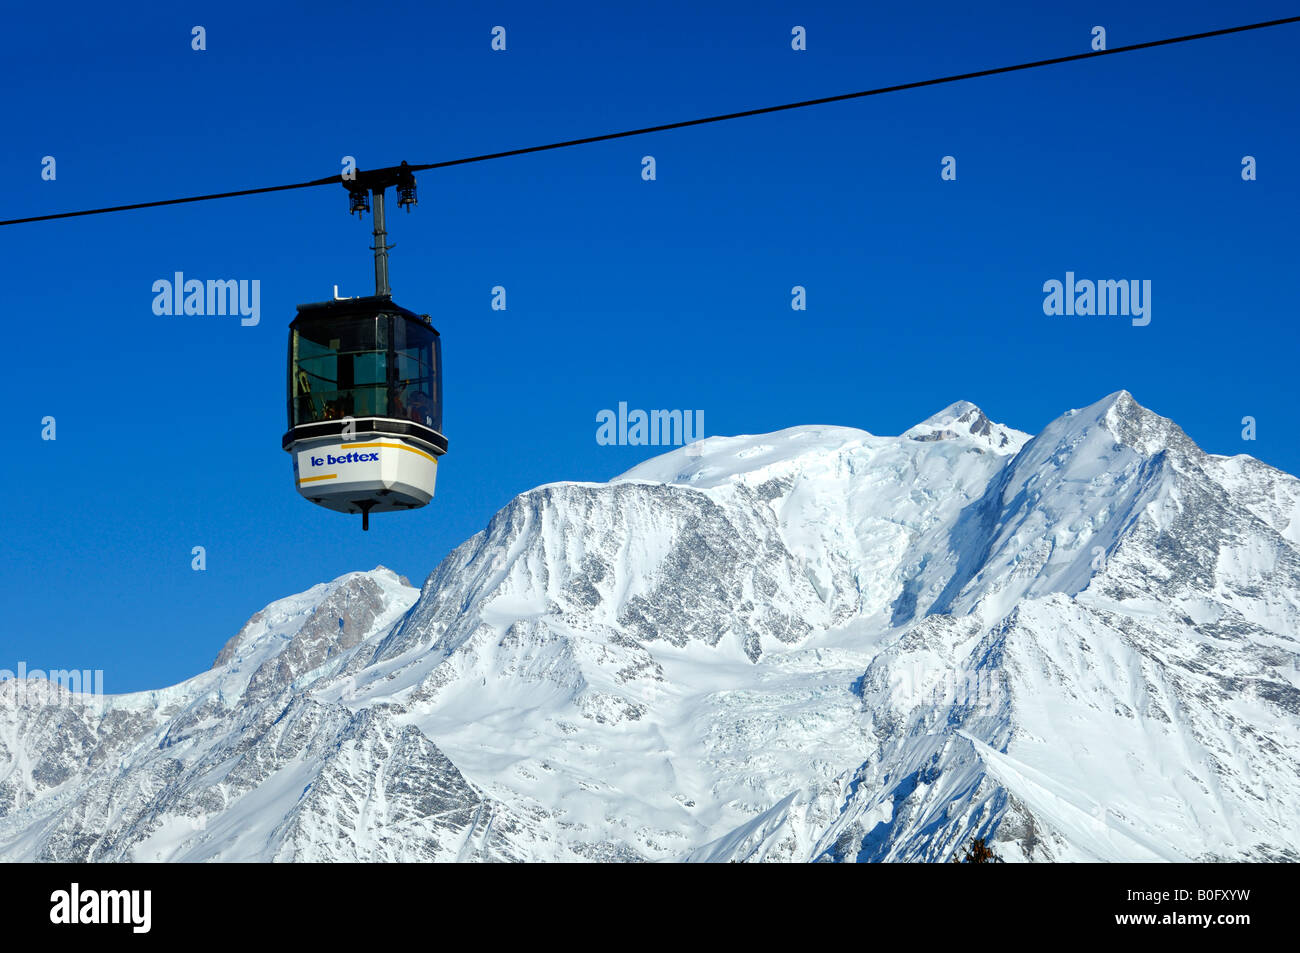  Saint-Gervais Mont Blanc